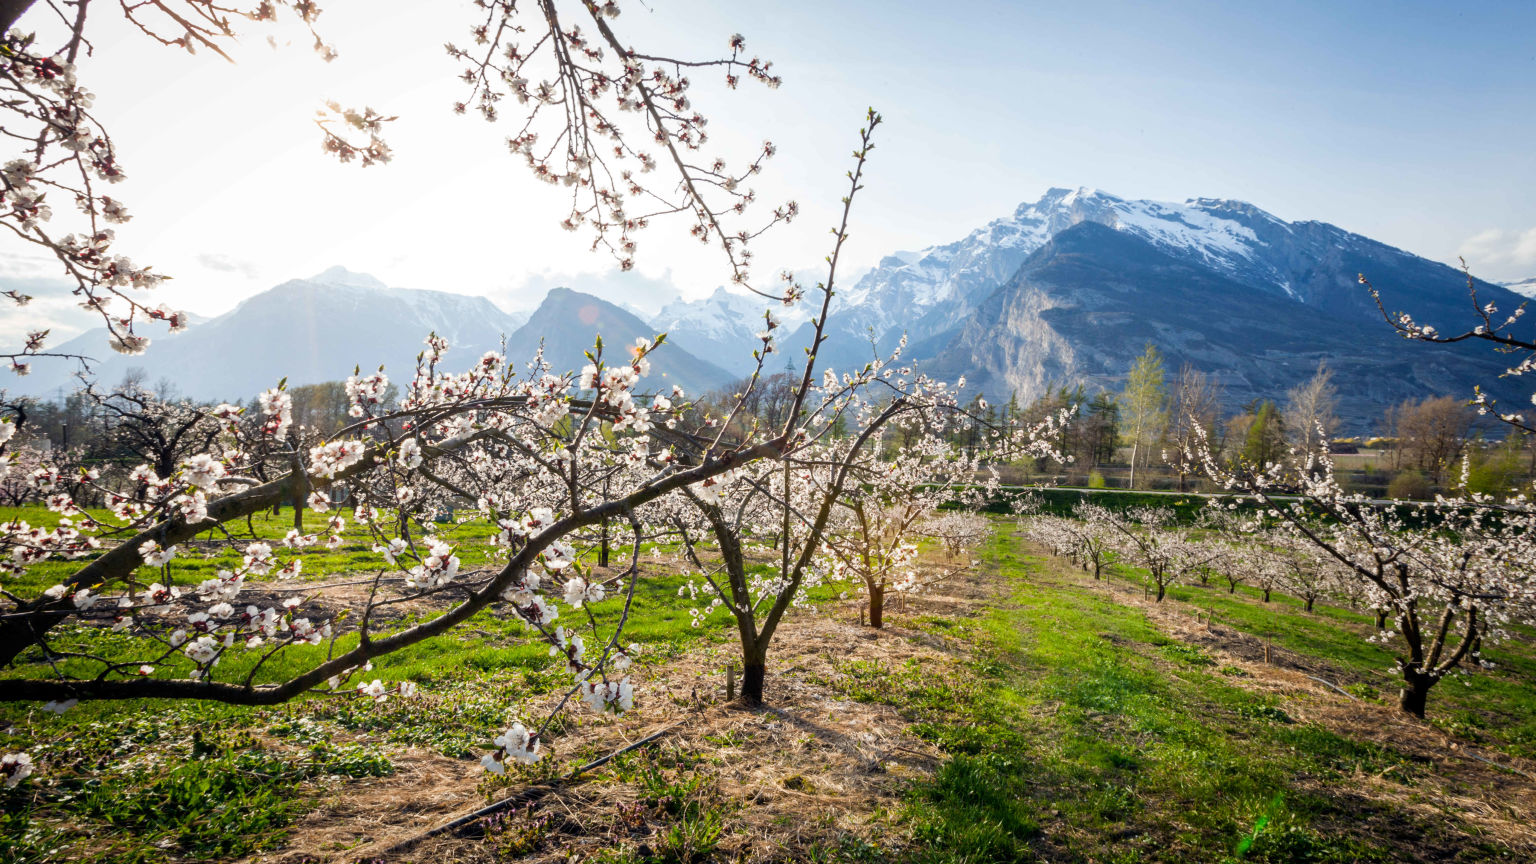 Vergers valaisans en fleur dans la plaine du Rhône Valais Wallis Schweiz Suisse